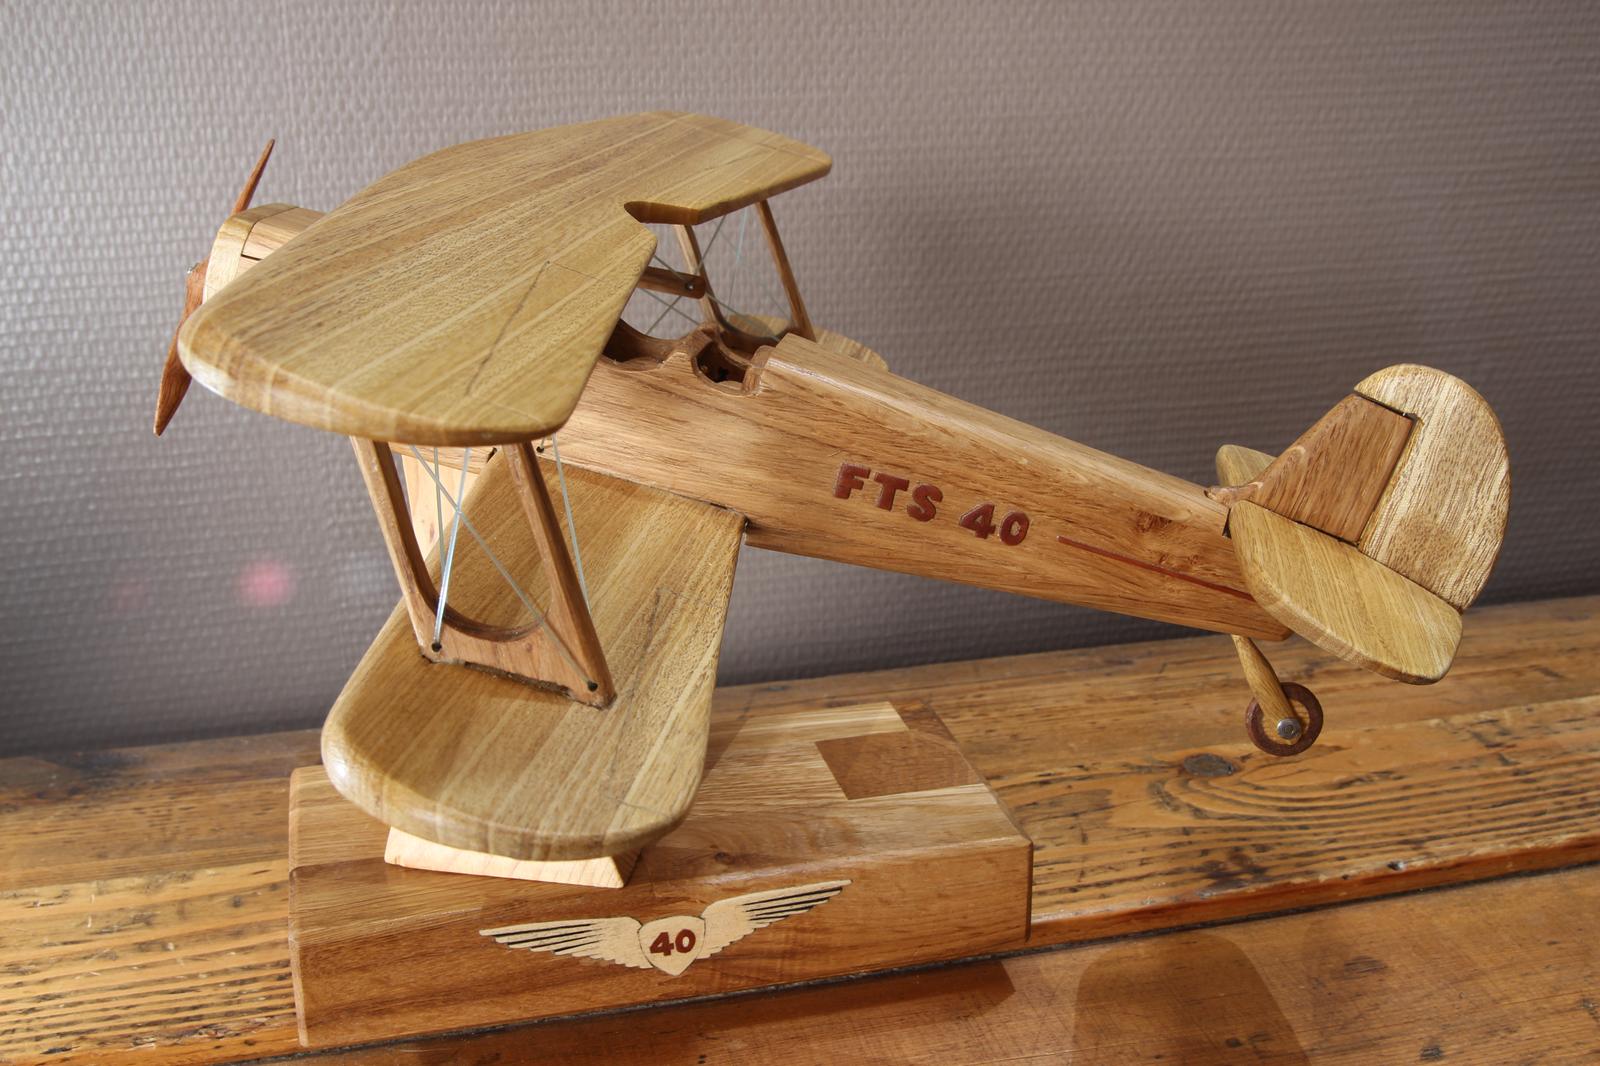 Maquette en bois d'un avion Stampe